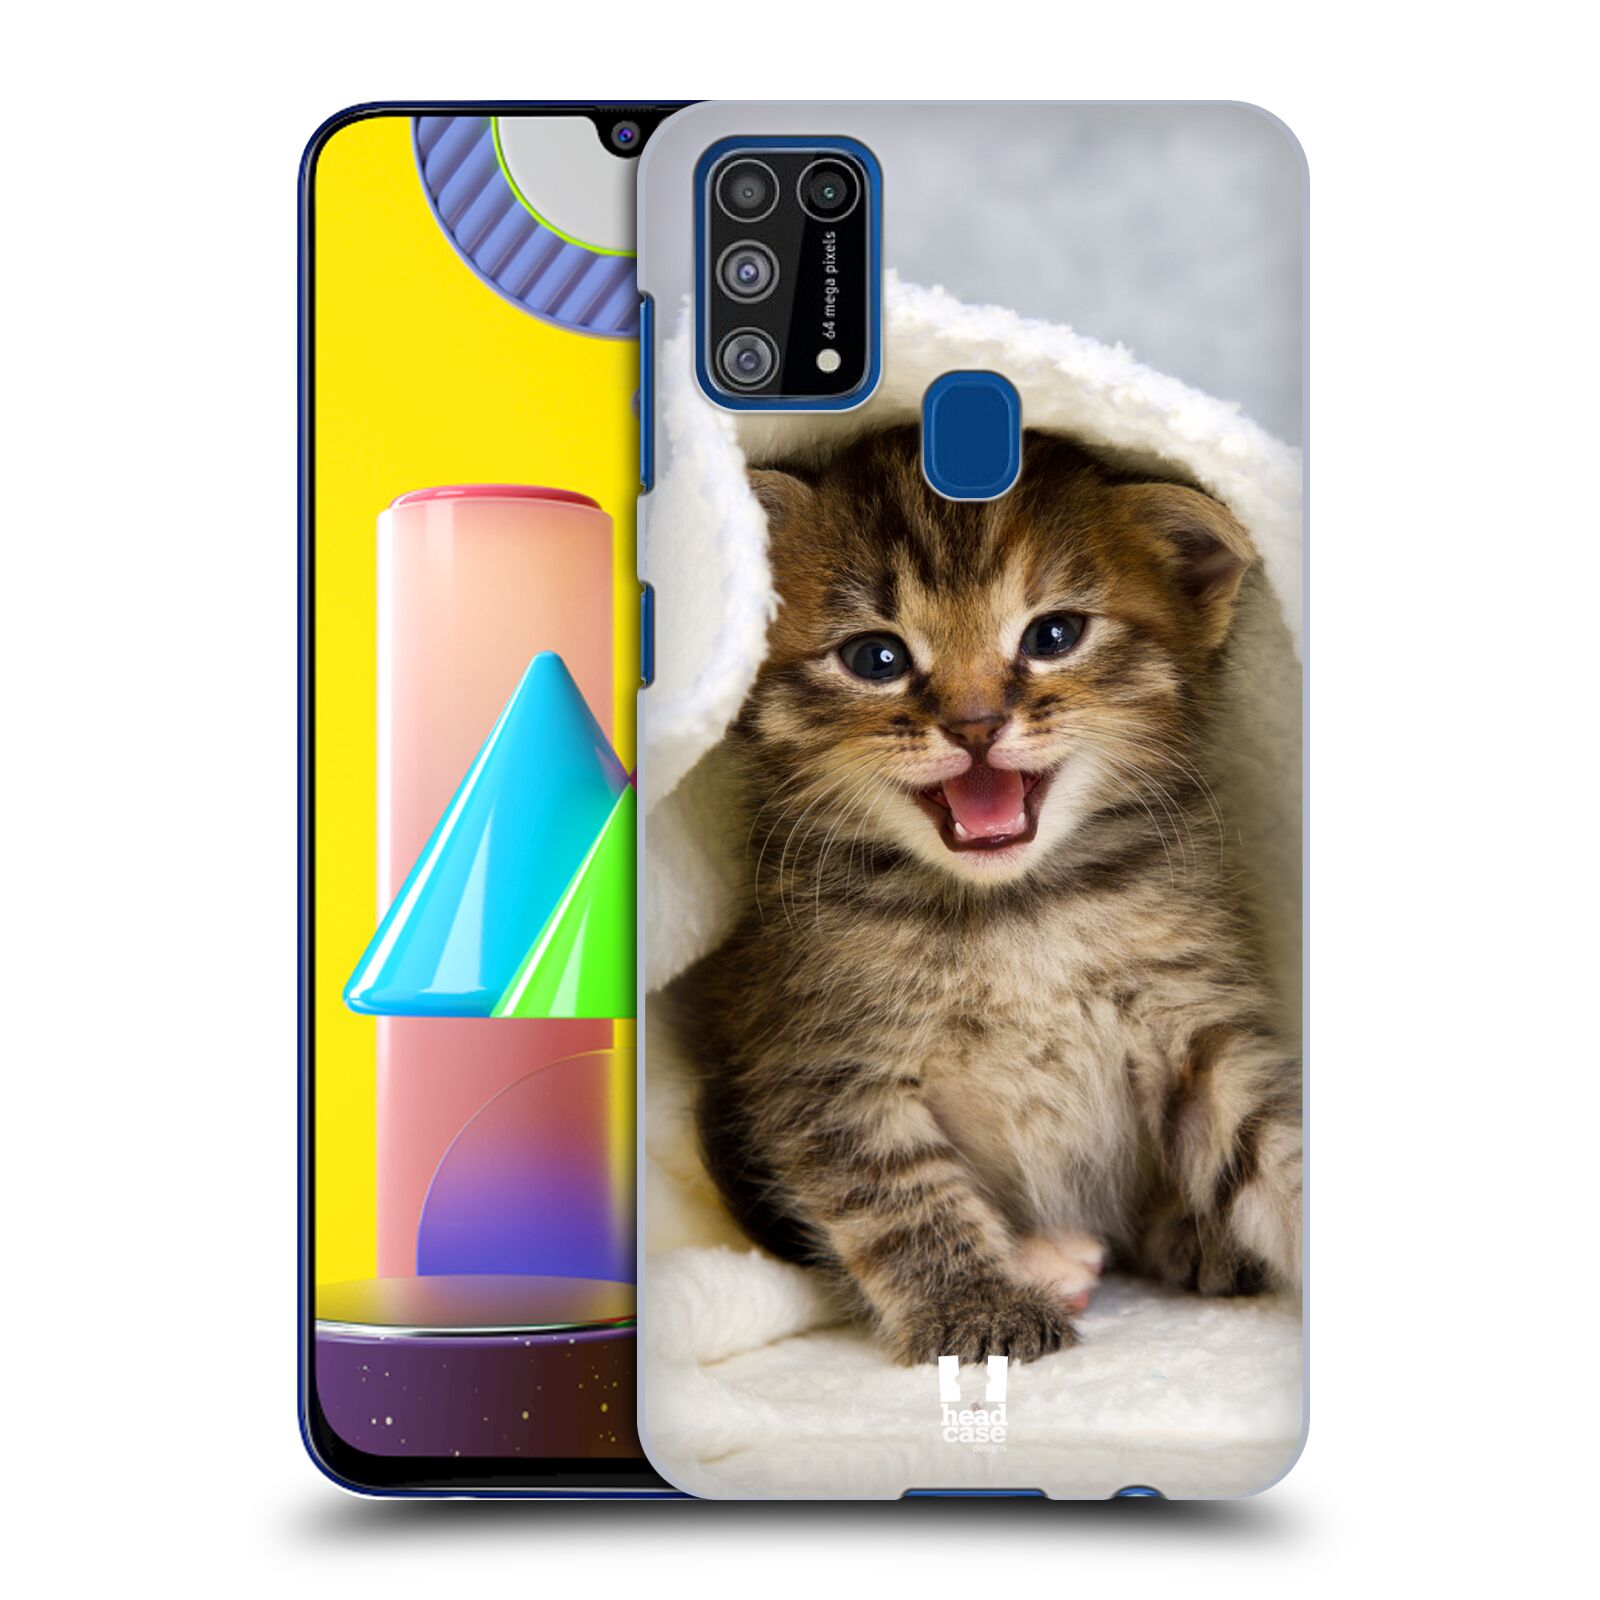 Plastový obal HEAD CASE na mobil Samsung Galaxy M31 vzor Kočičky koťata foto kotě v ručníku